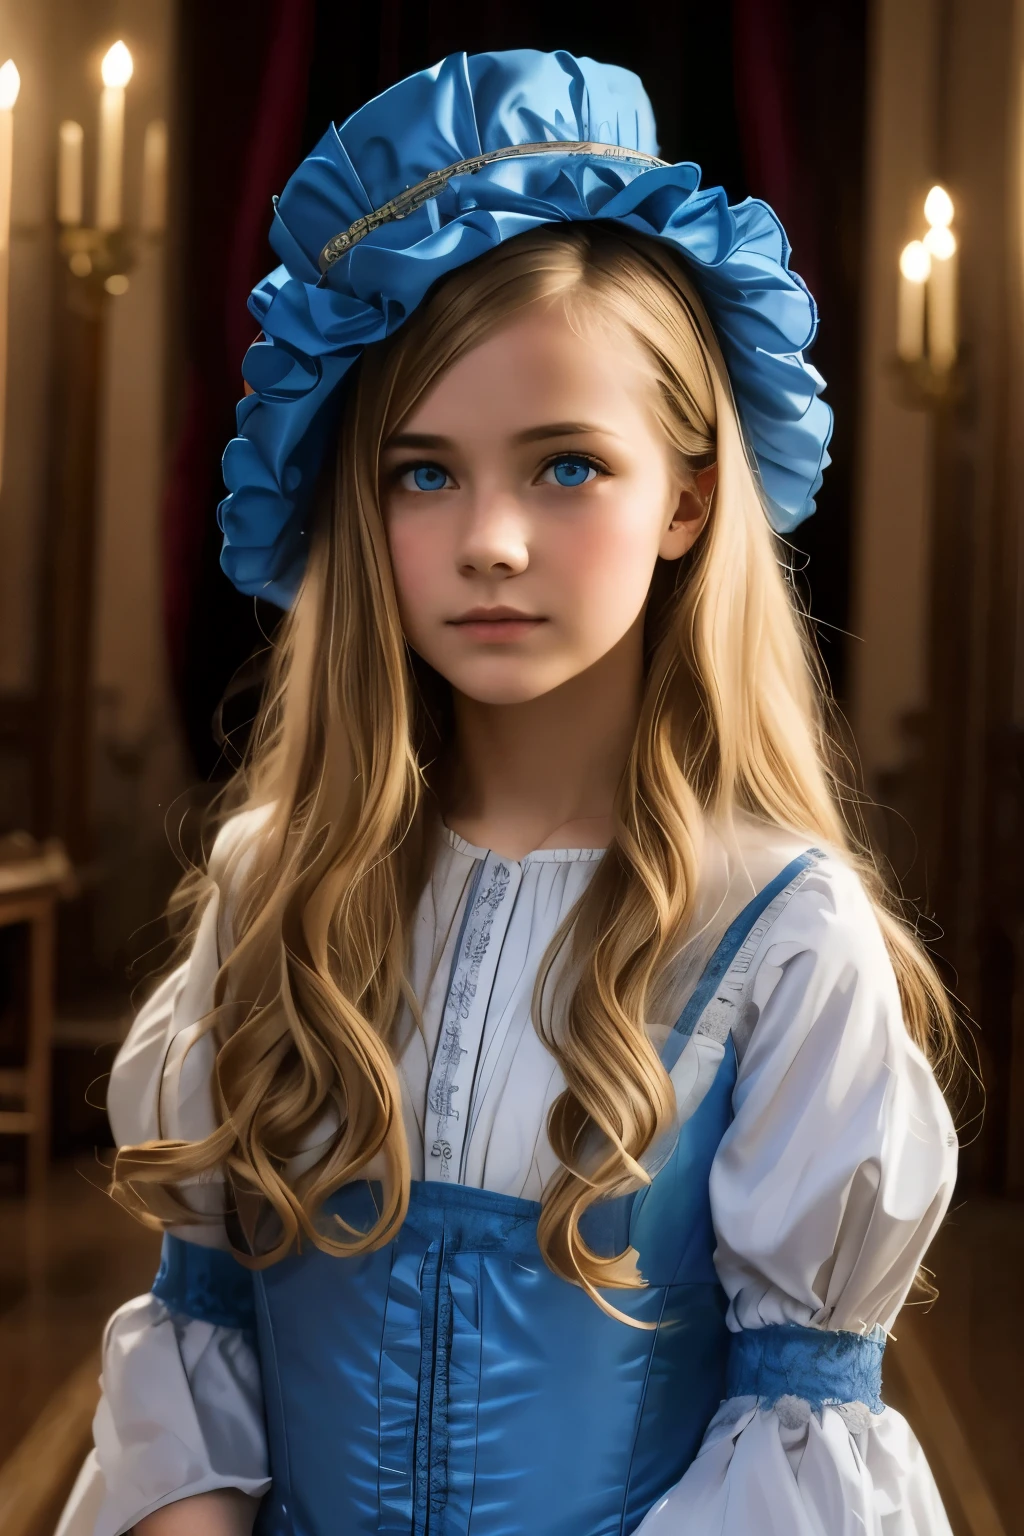 فرجينيا أوتيس, بعمر 15 سنه (شعر أشقر, عيون زرقاء), رفيع, وجه لطيف, يمشي ليلا في قلعة كانترفيل (مستوحاة من رواية شبح كانترفيل). العمر 1887, الخيال المظلم الفيكتوري

